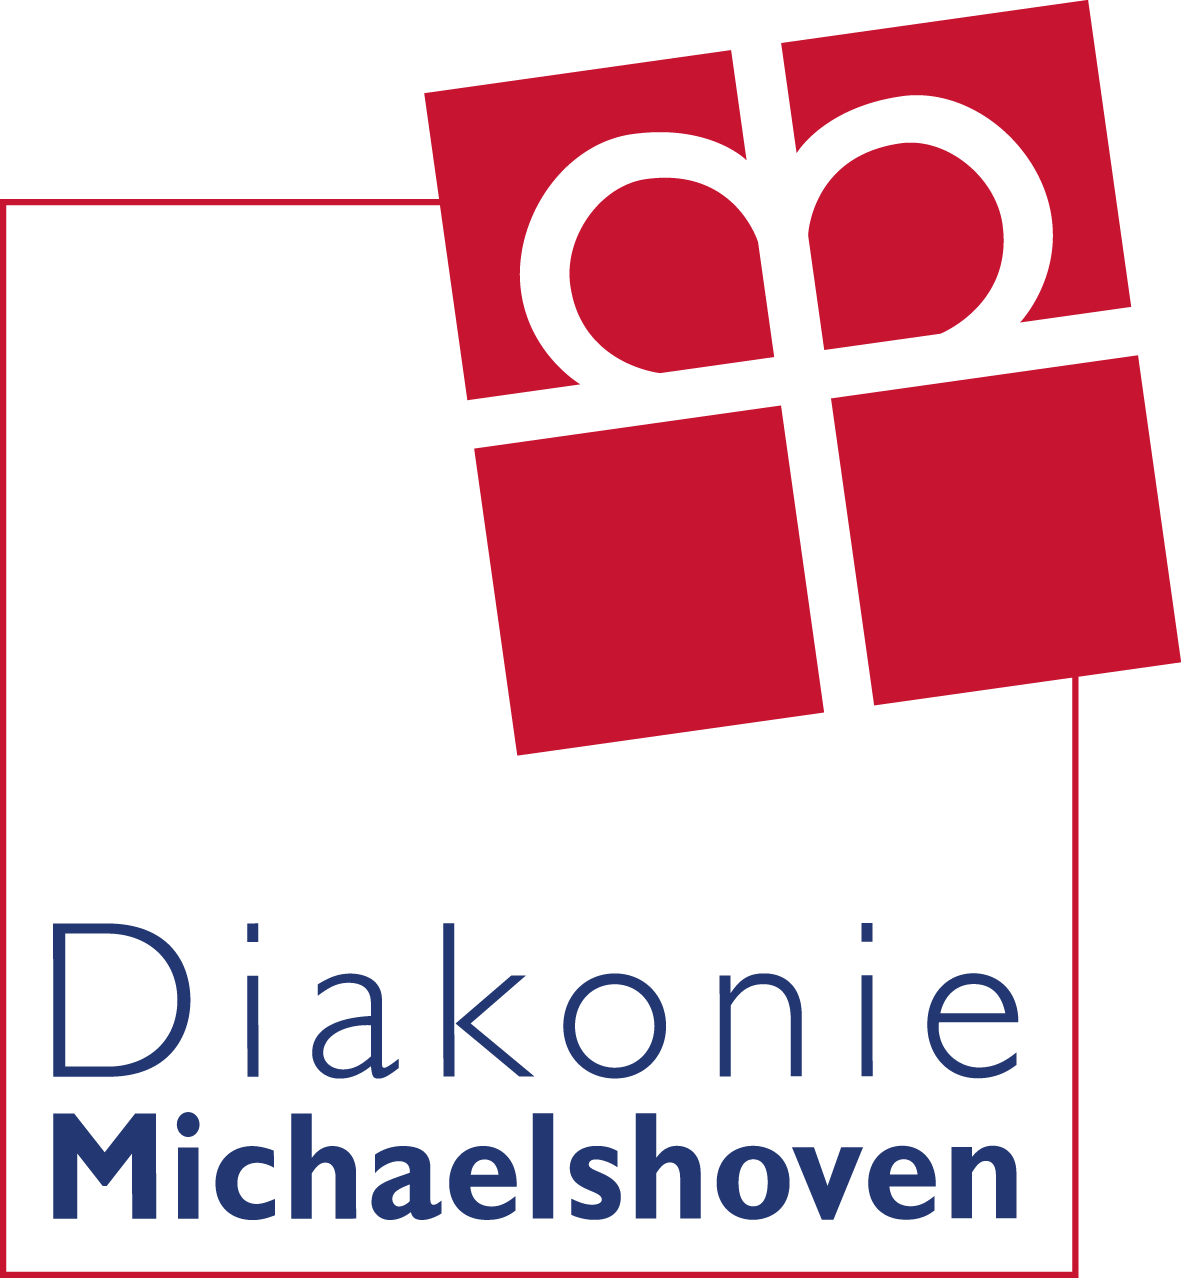 Diakonie Michaelshoven Pflege und Wohnen gGmbH